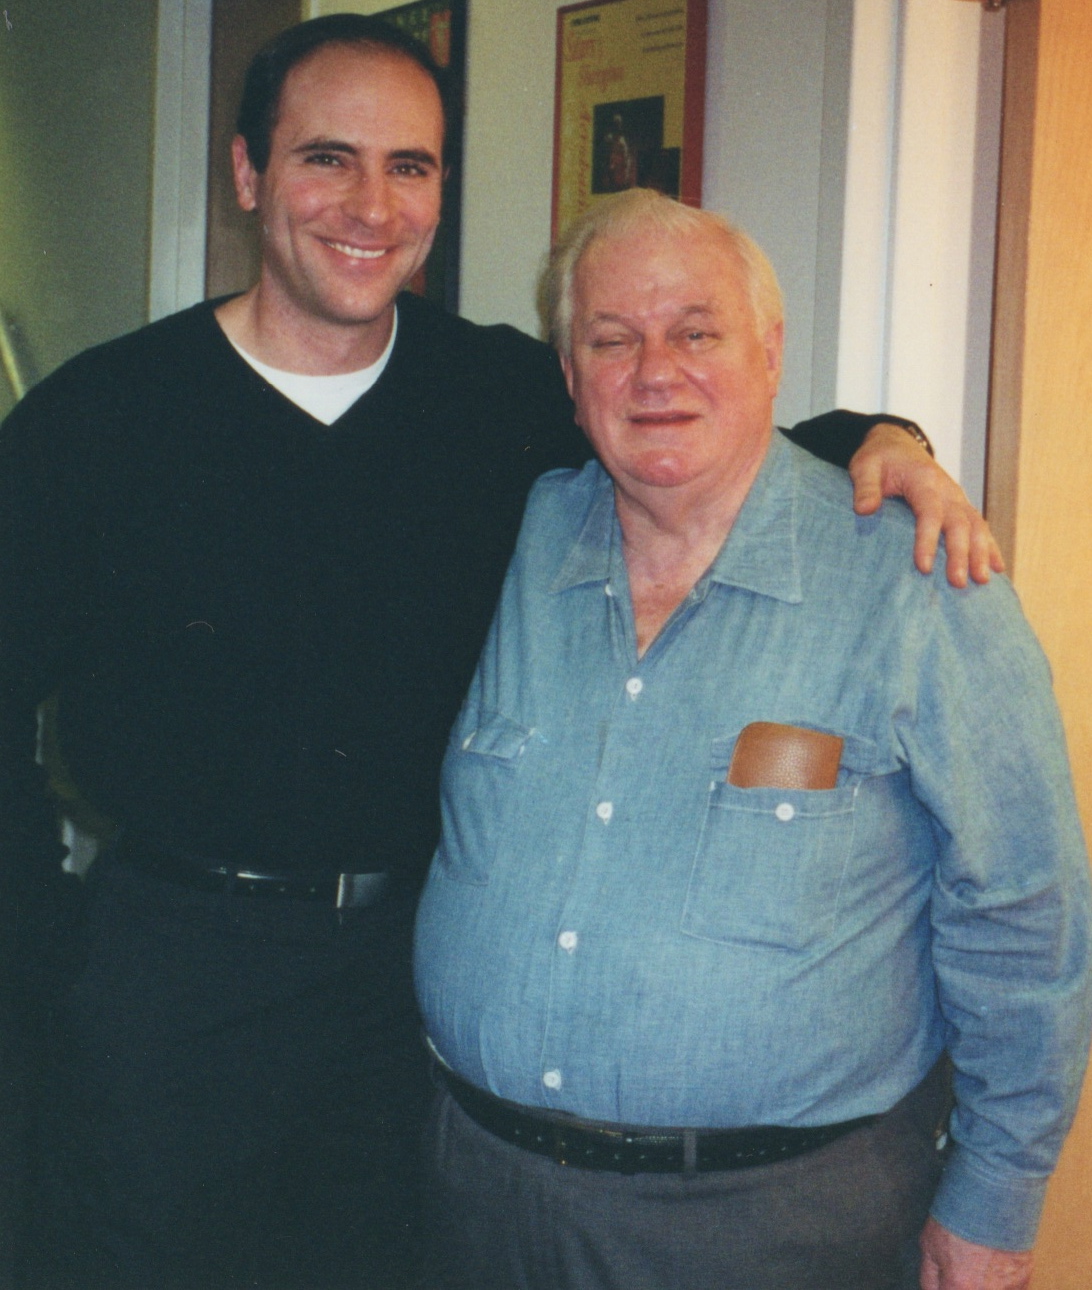 Jordan Lage & Charles Durning, opening night David Mamet's GLENGARRY GLEN ROSS, McCarter Theater, Princeton, NJ (2000).